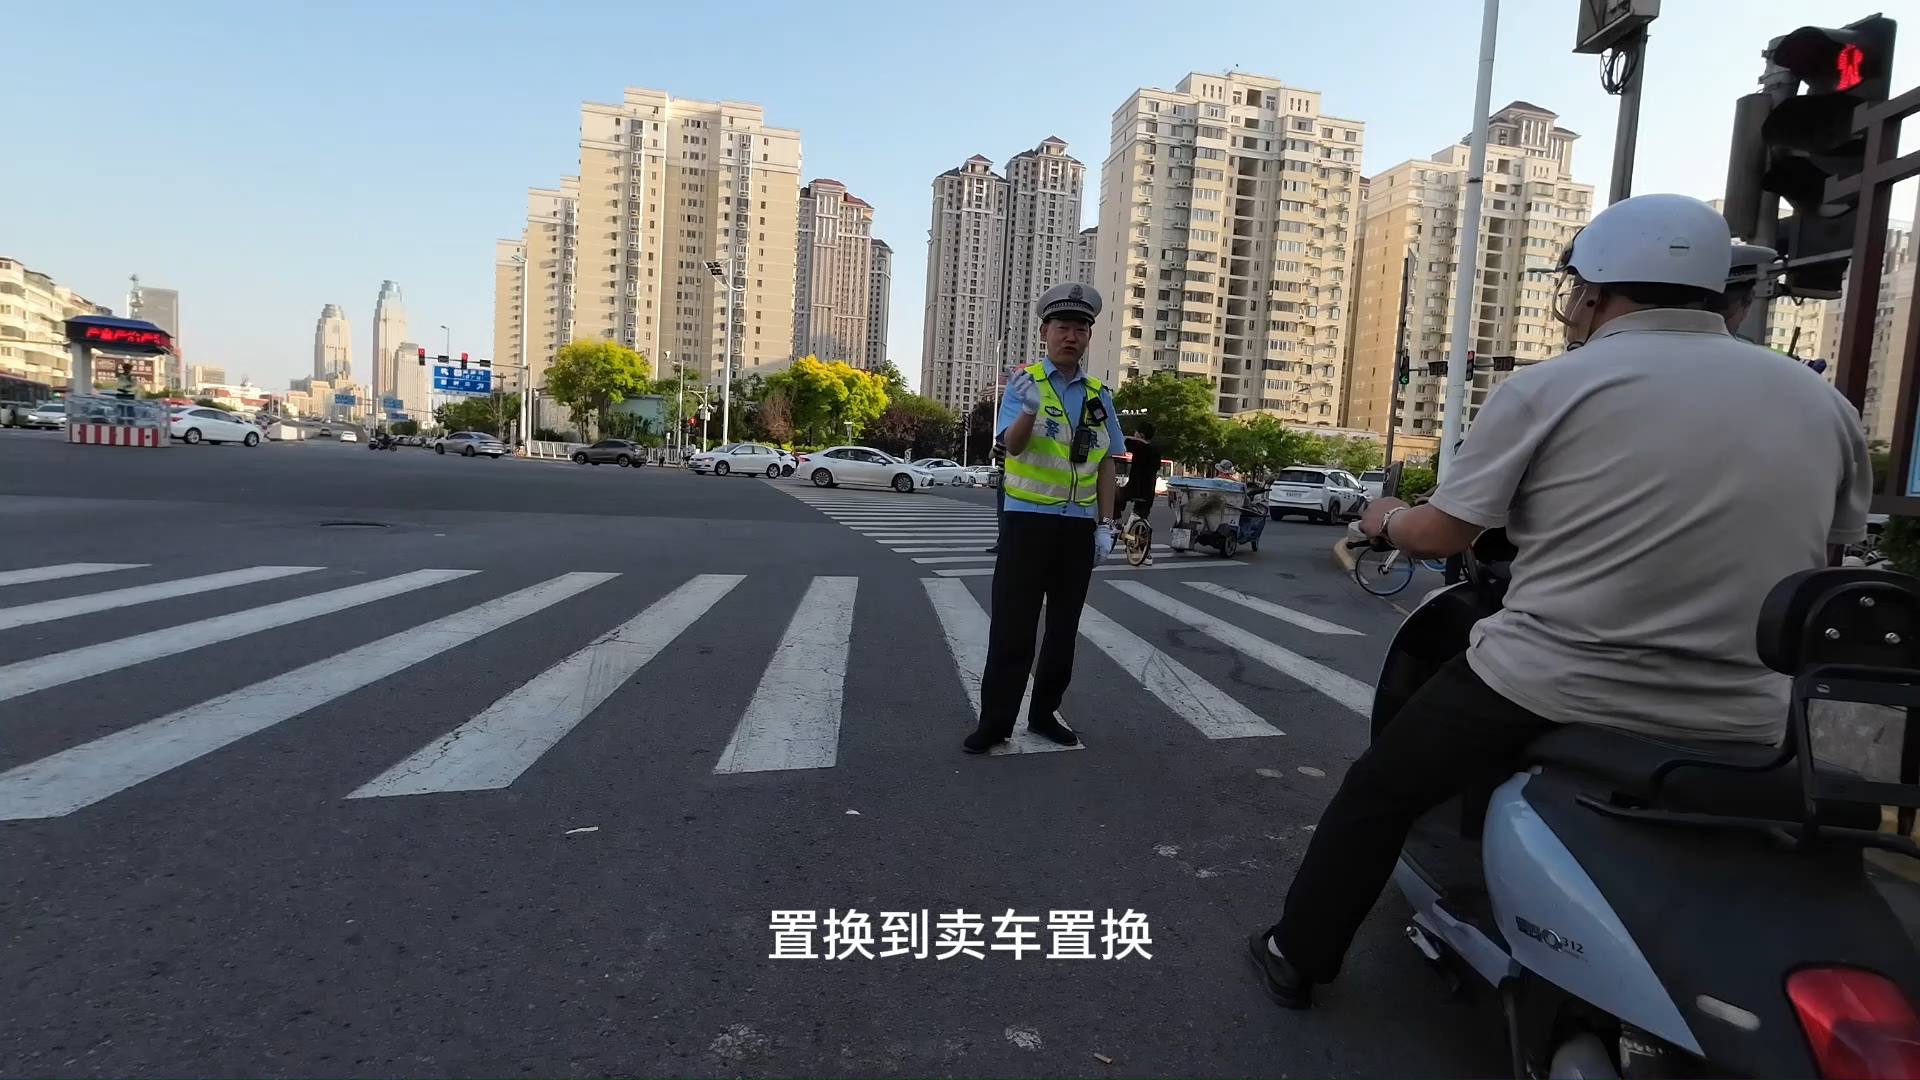 天津交警掰掰在查不带脚蹬子的电动车,可是车牌是谁给上的?